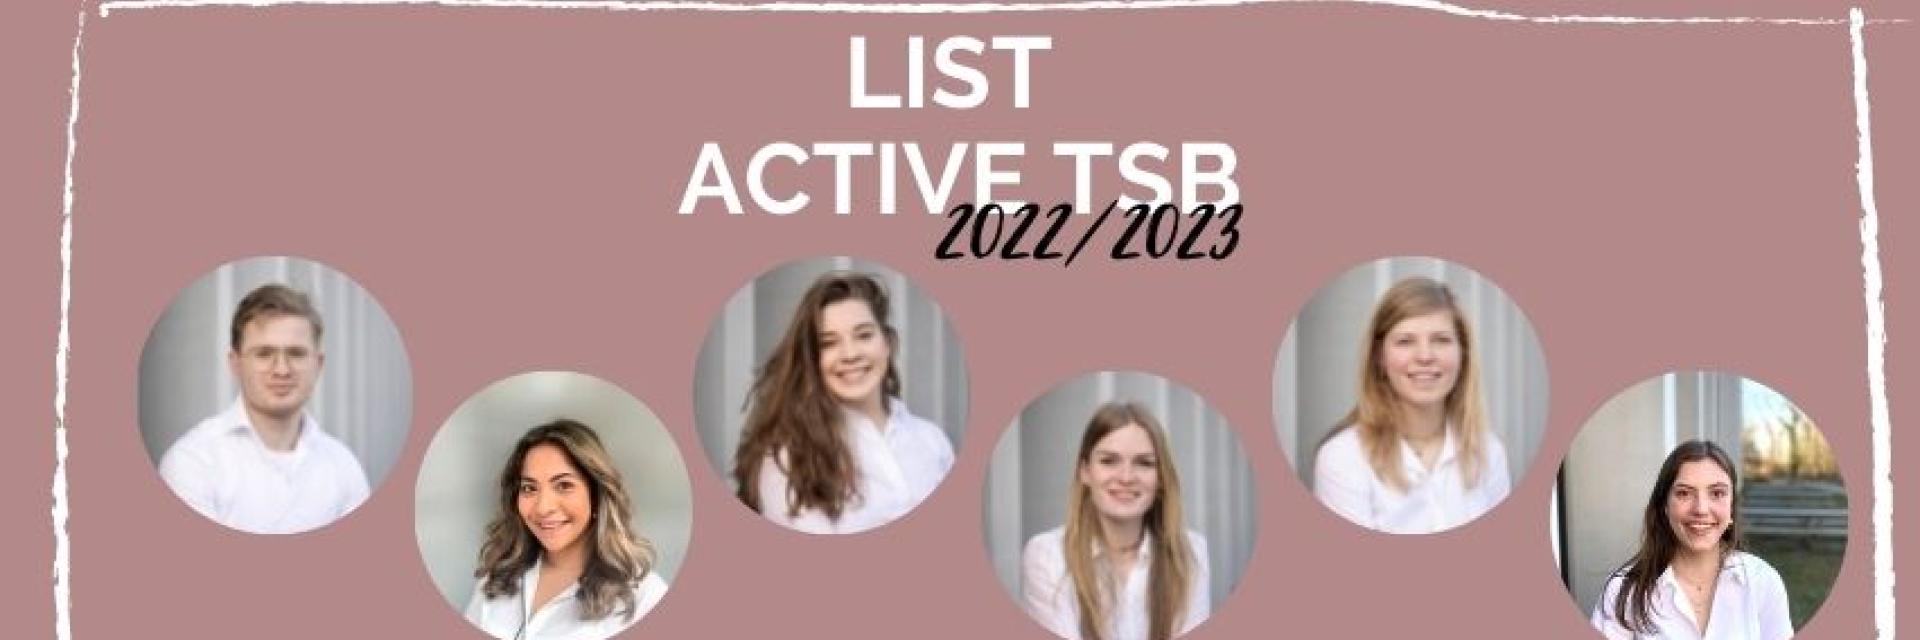 Active TSB